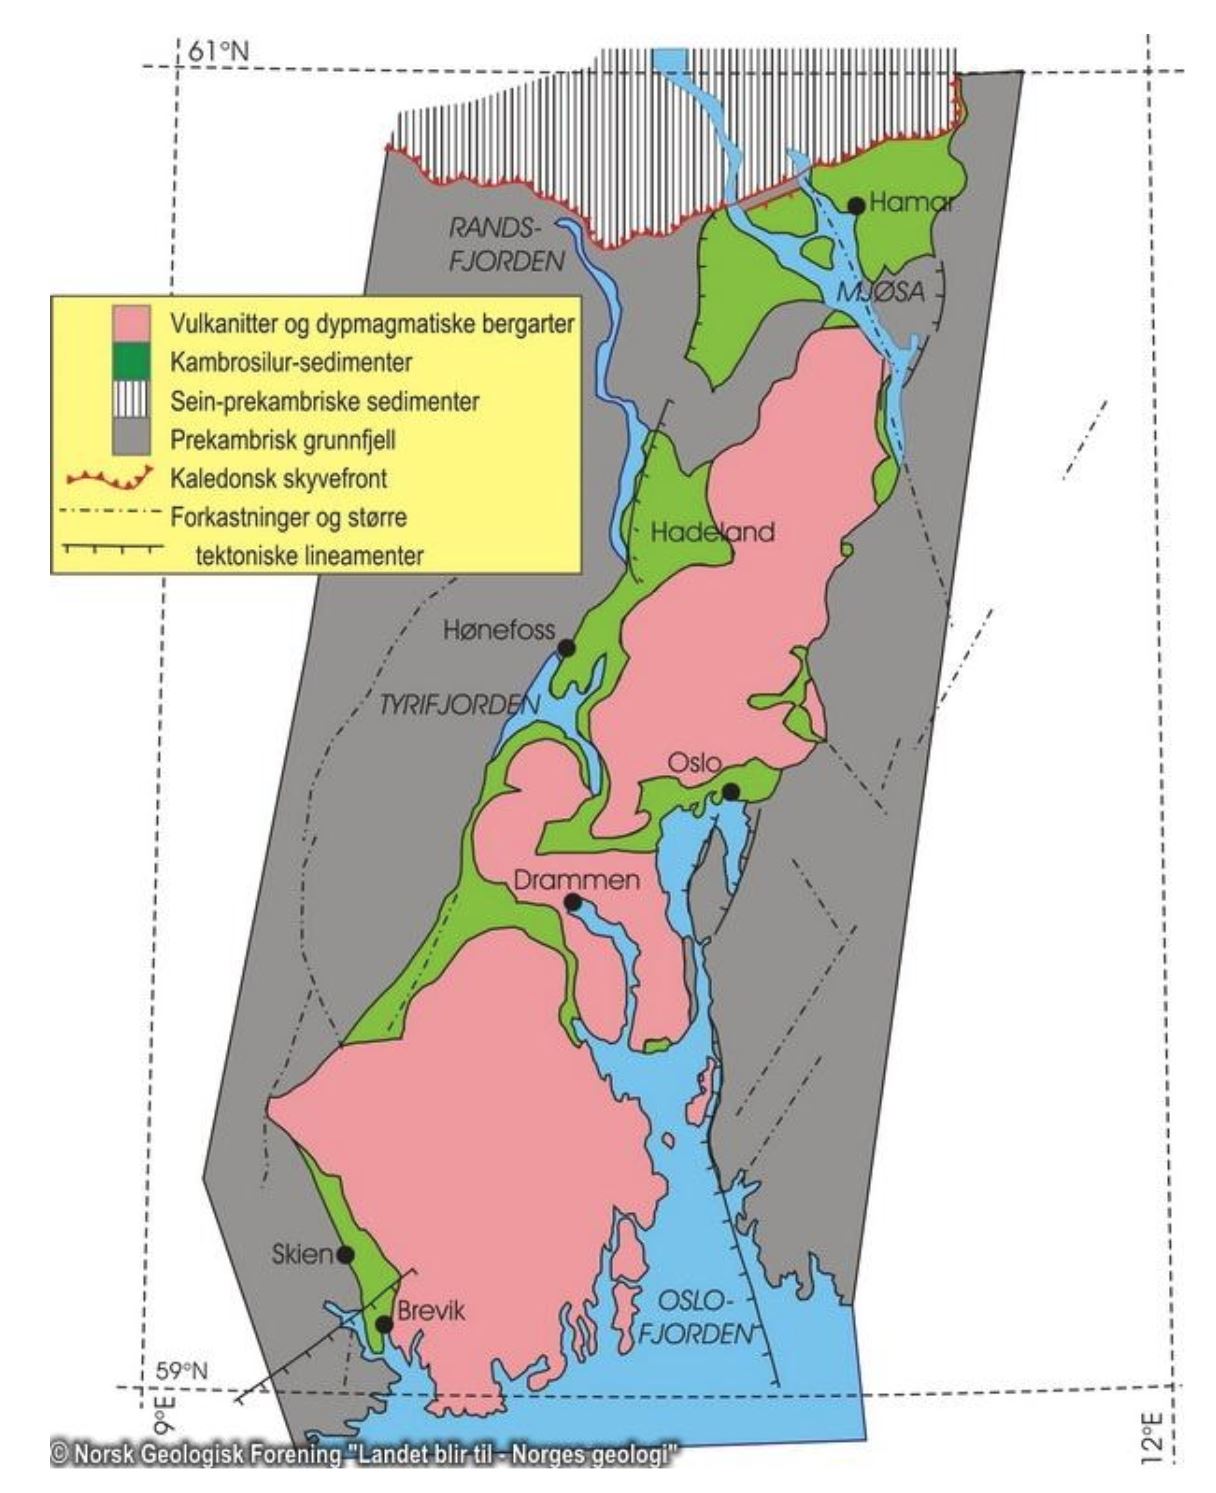 Området ligger som en grøft
mellom mer enn 1000 millioner
år gamle grunnfjellsbergarter.
De grønne lagene som strekker
seg fra Brevik i sør til Ringsaker
i nord, består av deformerte
lagdelte bergarter med aldre
fra 500 til 420 millioner år.
Bergartene markert i rødt består
av størknede dypbergarter
og lavaer. Disse ble dannet i
Permtiden for ca. 250 millioner
år siden. Illustrasjonen er
hentet fra Landet blir til, Norsk
geologisk forening, av Ramberg,
I. mfl.